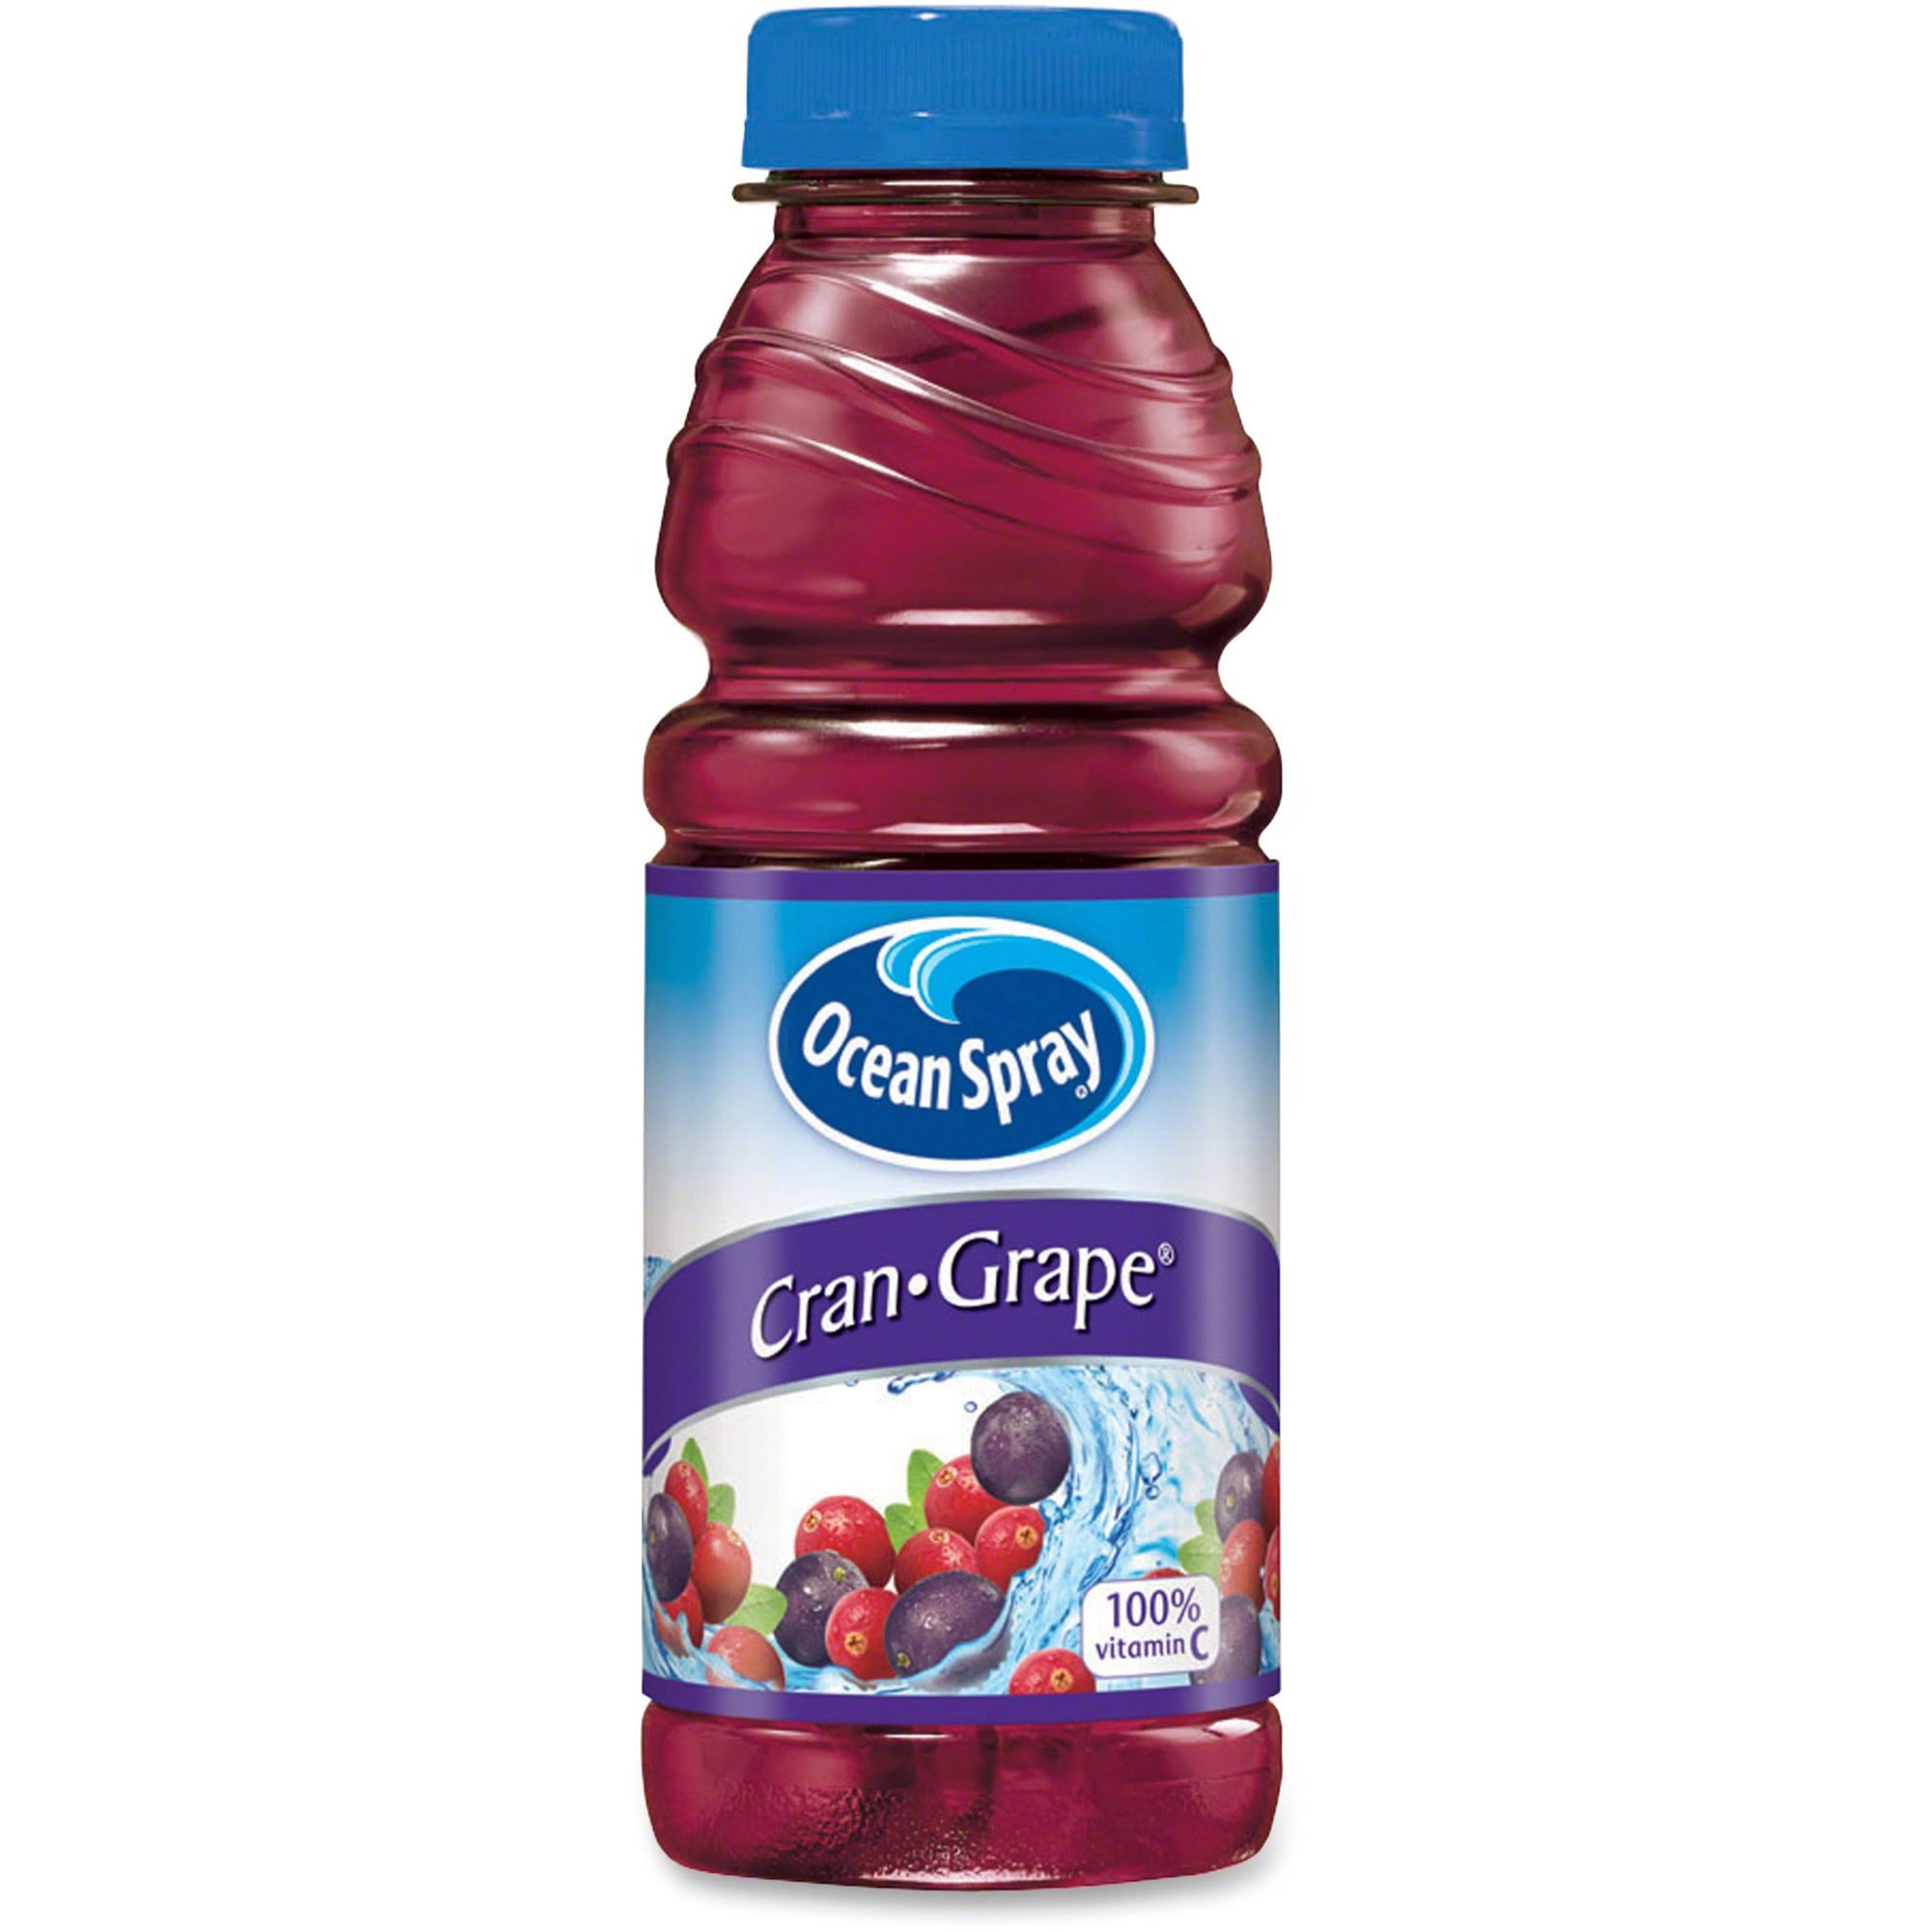 Ocean Spray Cran-Grape Juice Drink -